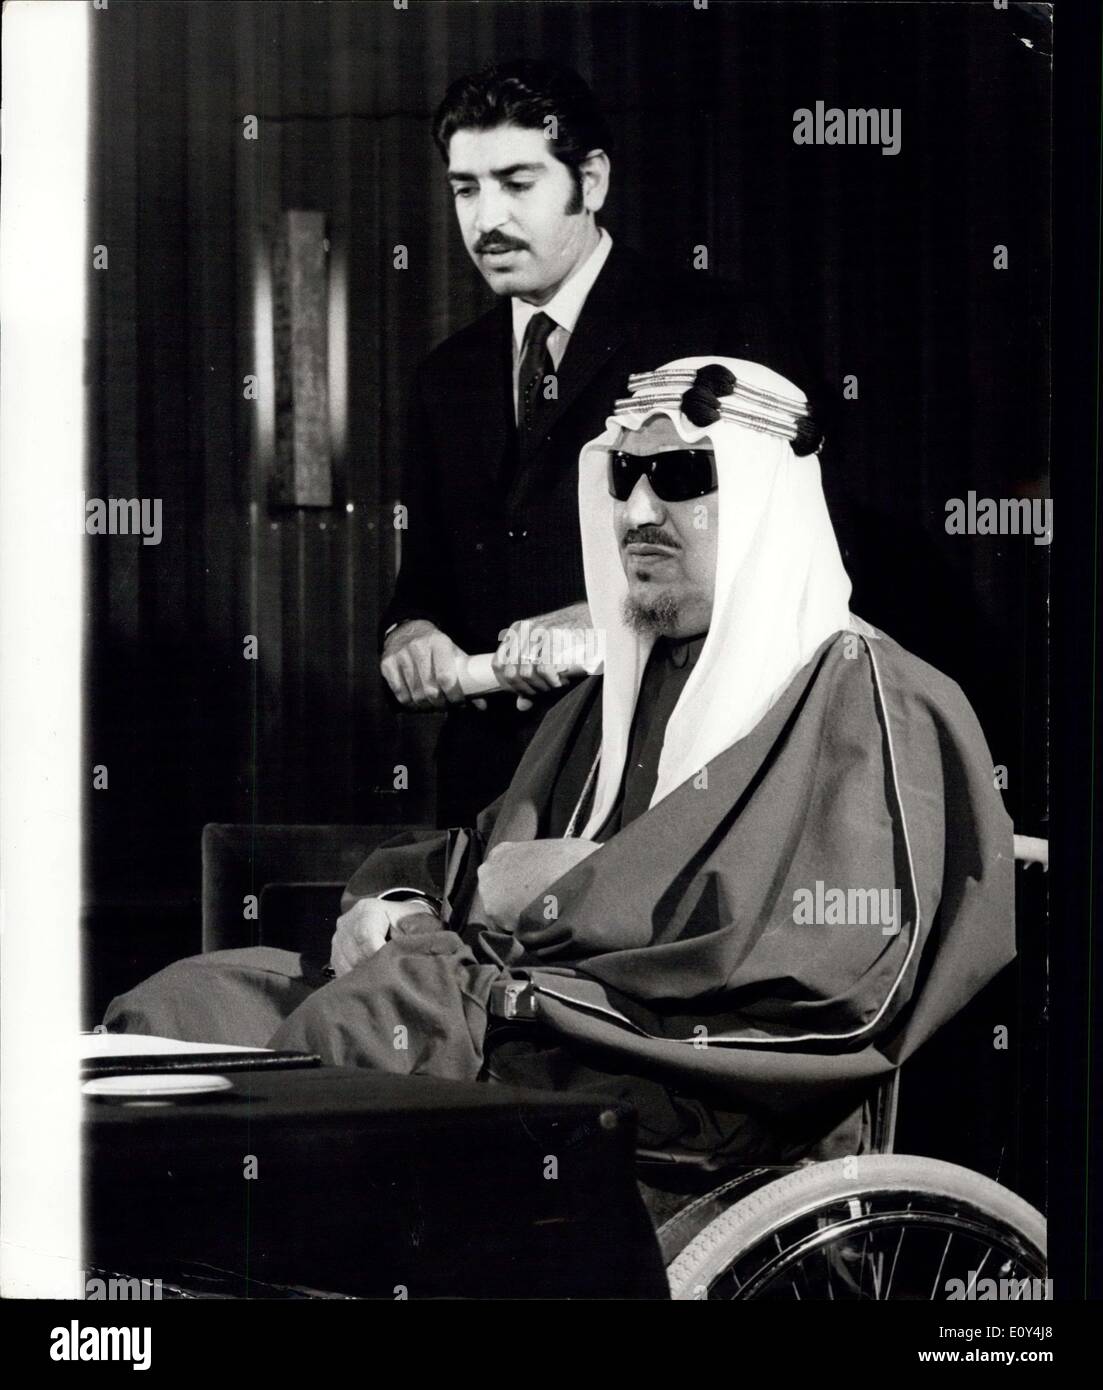 El 12 de octubre, 1968 - Ex-King Saud celebra conferencia de prensa en Londres: Ex-King Saud de Arabia Saudita, a la que asistieron a su yerno, Abdurahman Al Ghuneim, quien actúa como su secretario y su intérprete, la celebración de una conferencia de prensa ayer en Londres. El ex-rey, quien se encuentra en Gran Bretaña durante varias semanas para el tratamiento de reumatismo en las rodillas, dijo que "anhela' para regresar a su patria. Su familia la decisión t deponer a él en favor de su hermano Faisal fue ''prudente'', dijo. Si regresaría nunca podrán regresar fue ''en las manos de los dioses Foto de stock